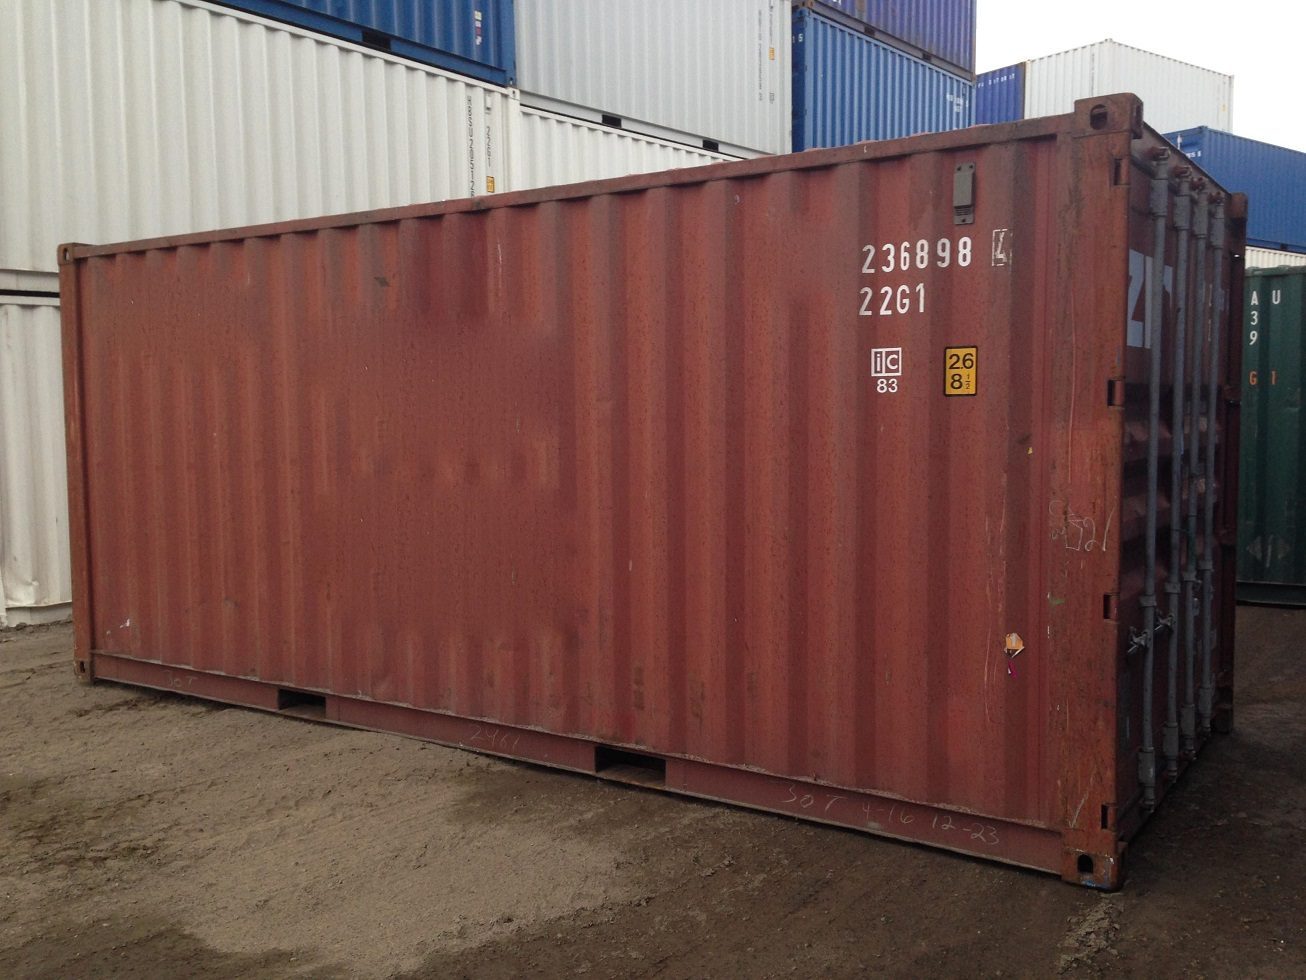 20 Fuß Seecontainer gebraucht wwt